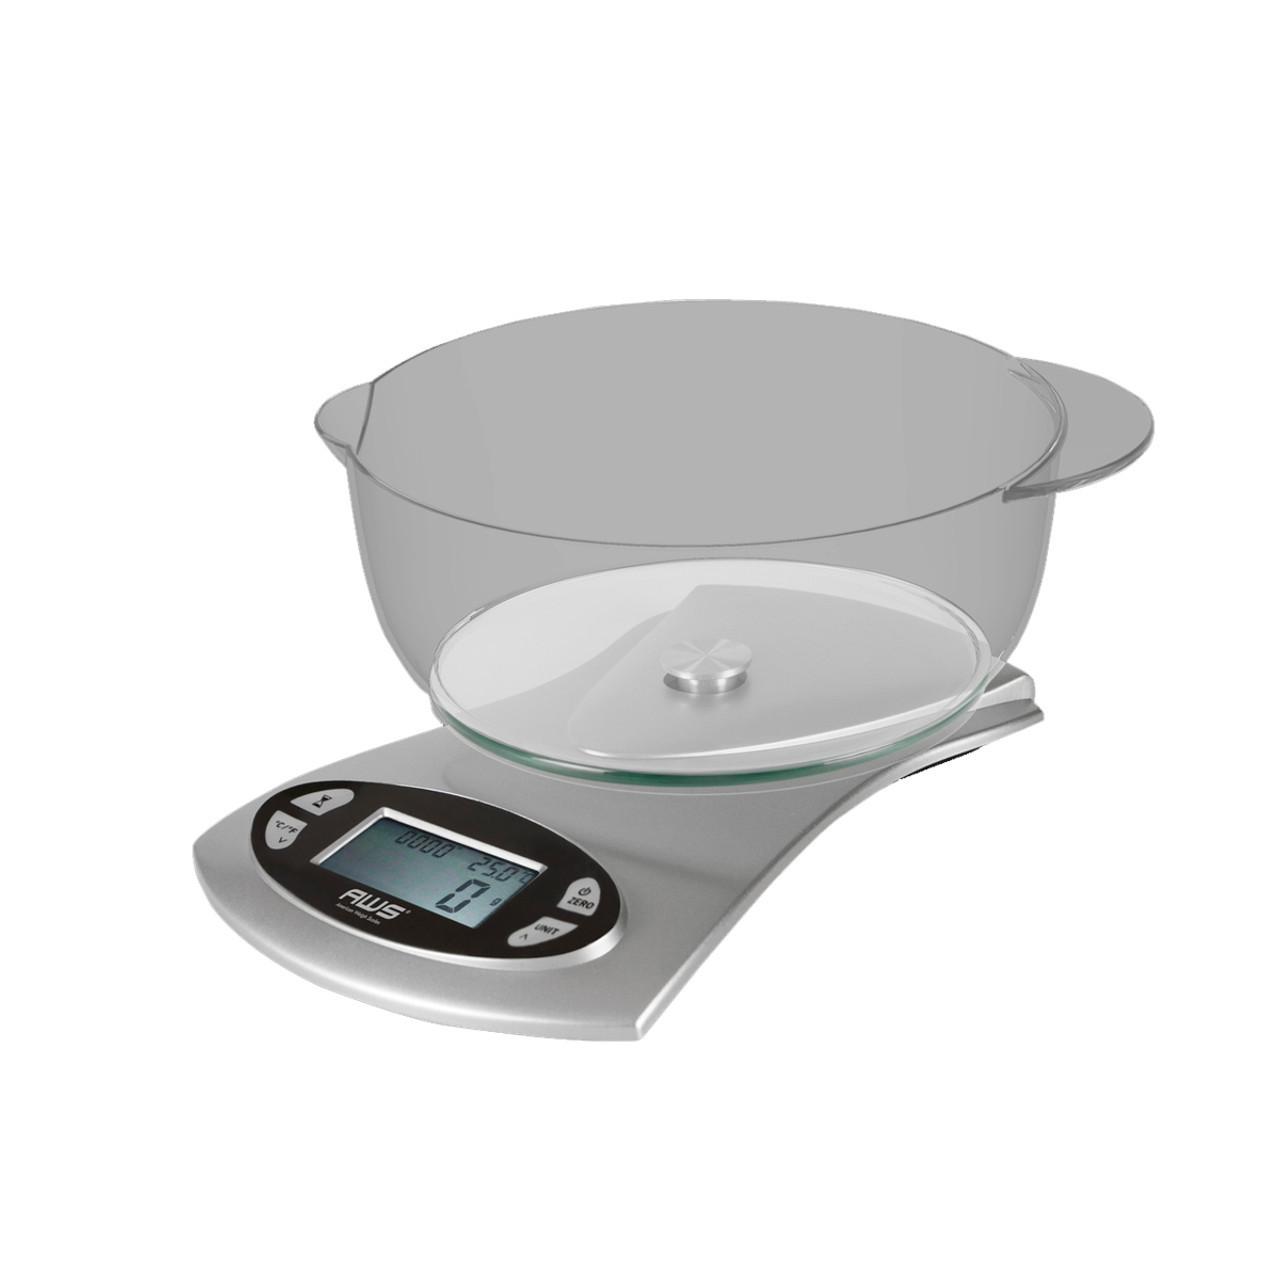 Scale Electronic 5 kg Max - 0.1 G Precision Digital Scale Laboratory Kitchen Scientific